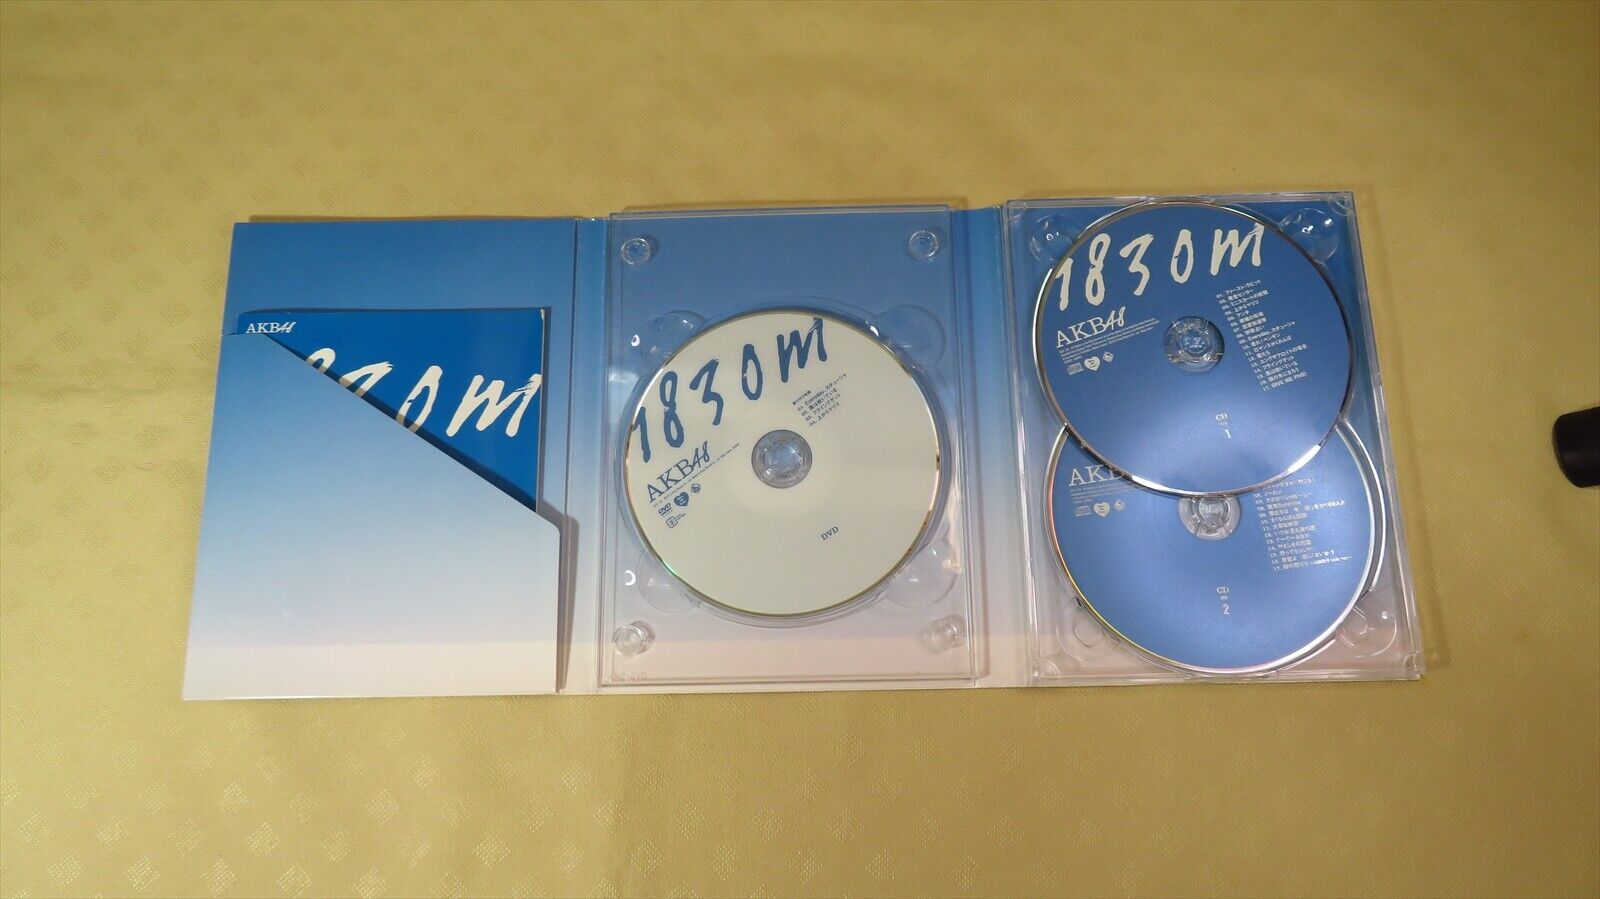 AKB48 CD DVD disc CD/DVD set music 2-disc used cd's 1830m Japanese ver  Japan JP 4988002199068 | eBay